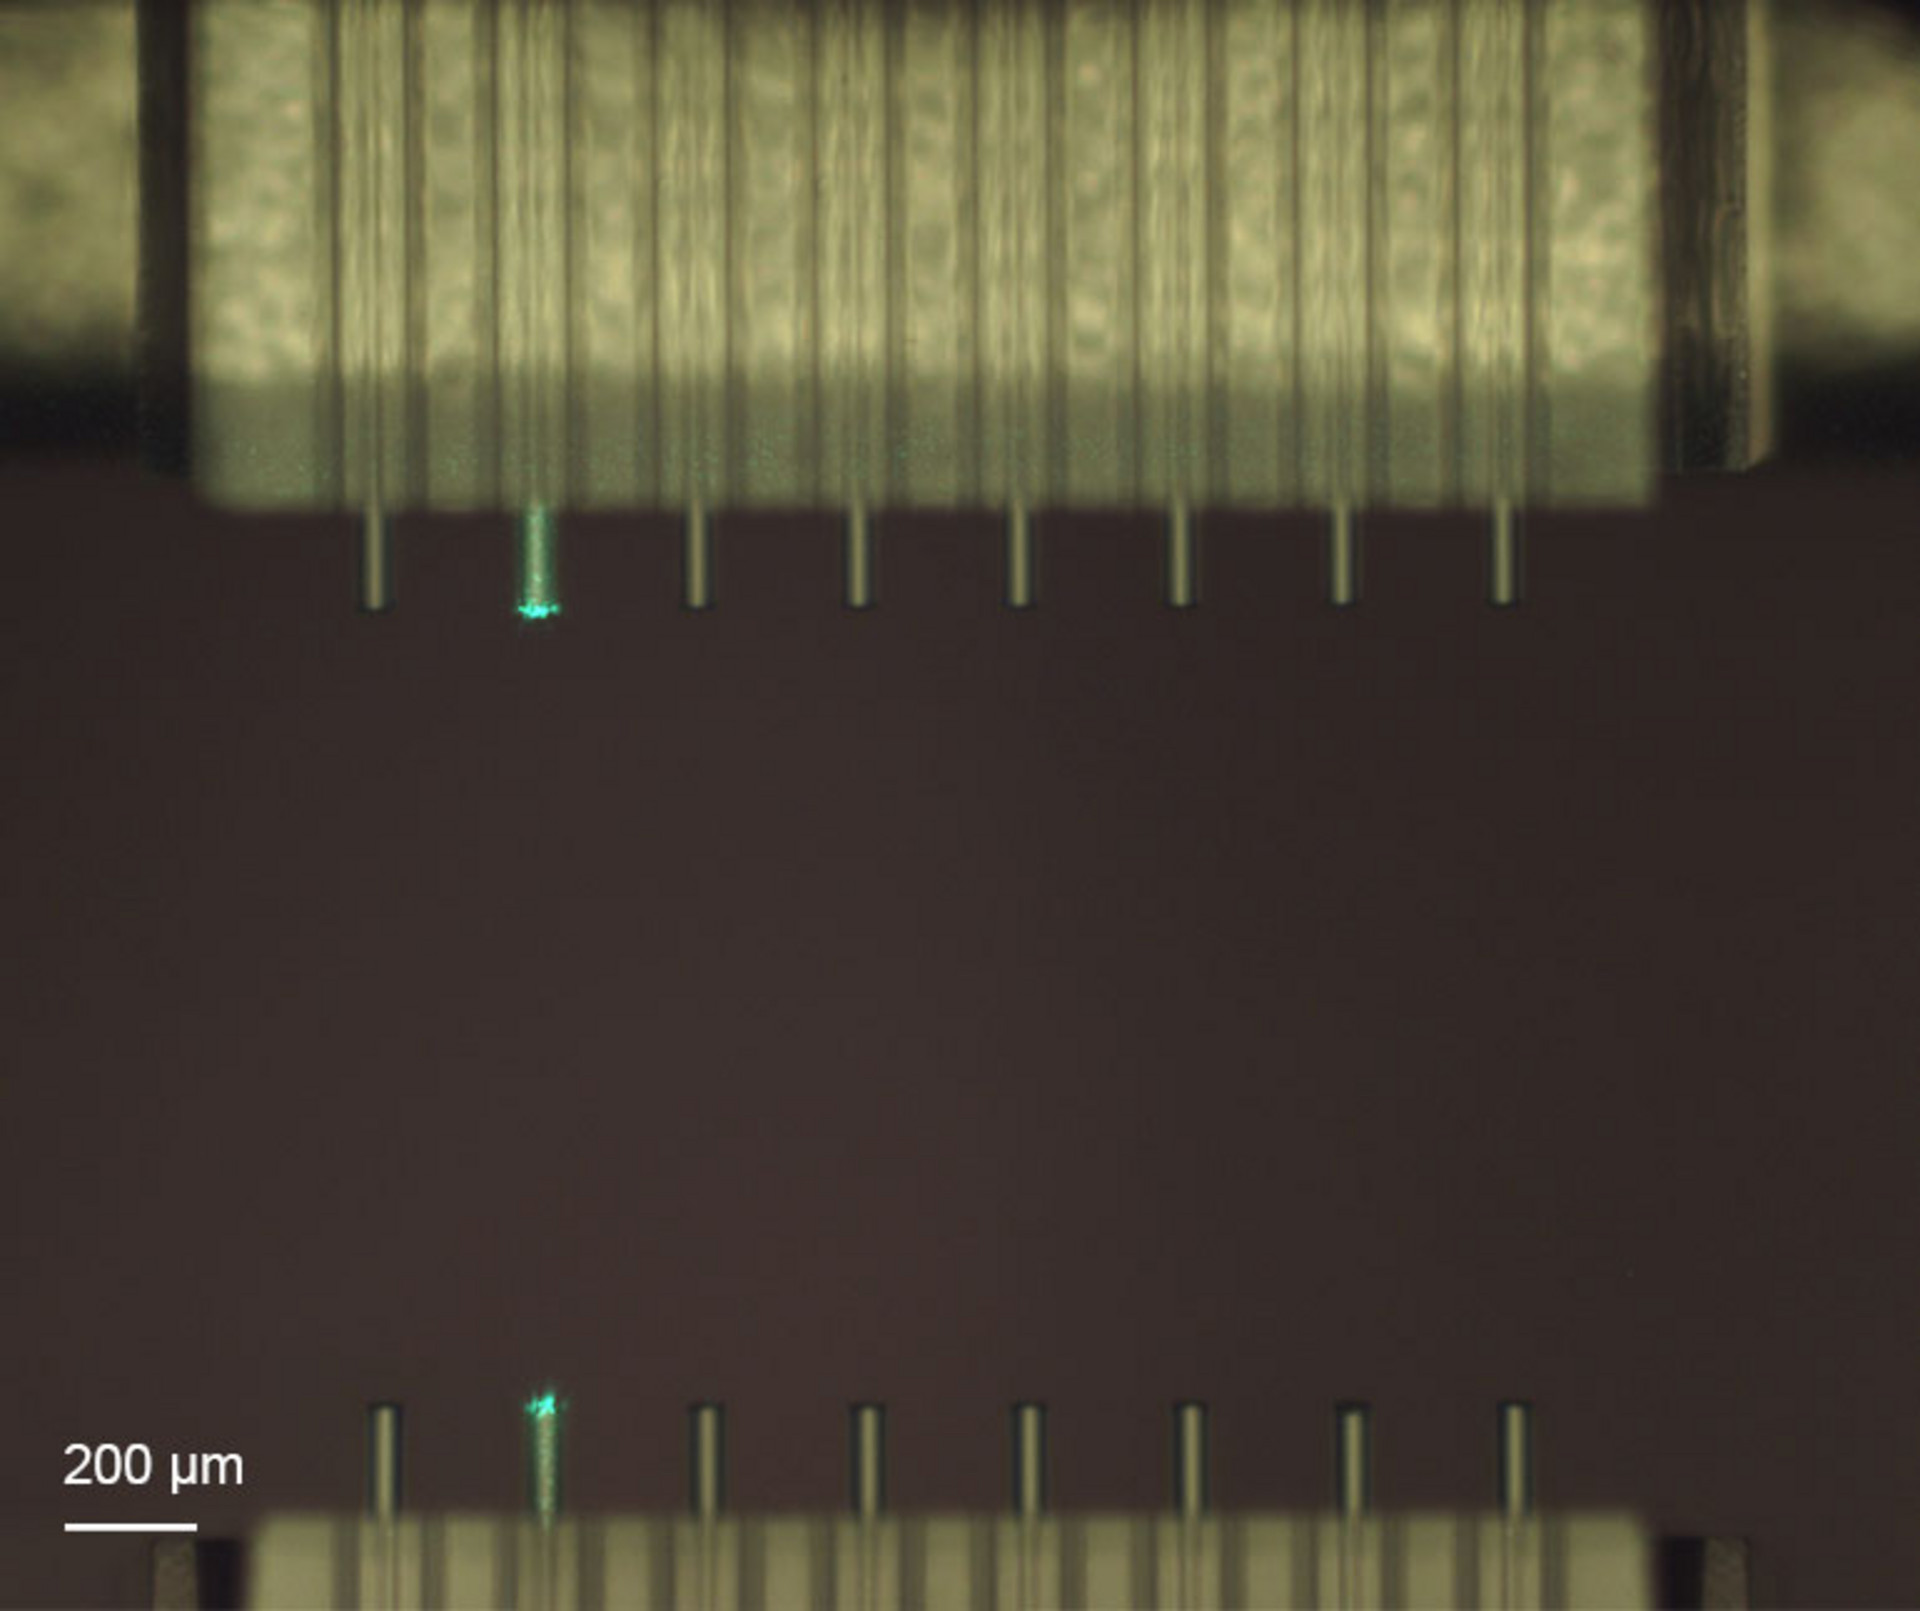 Nanoscribe coupling fiber arrays